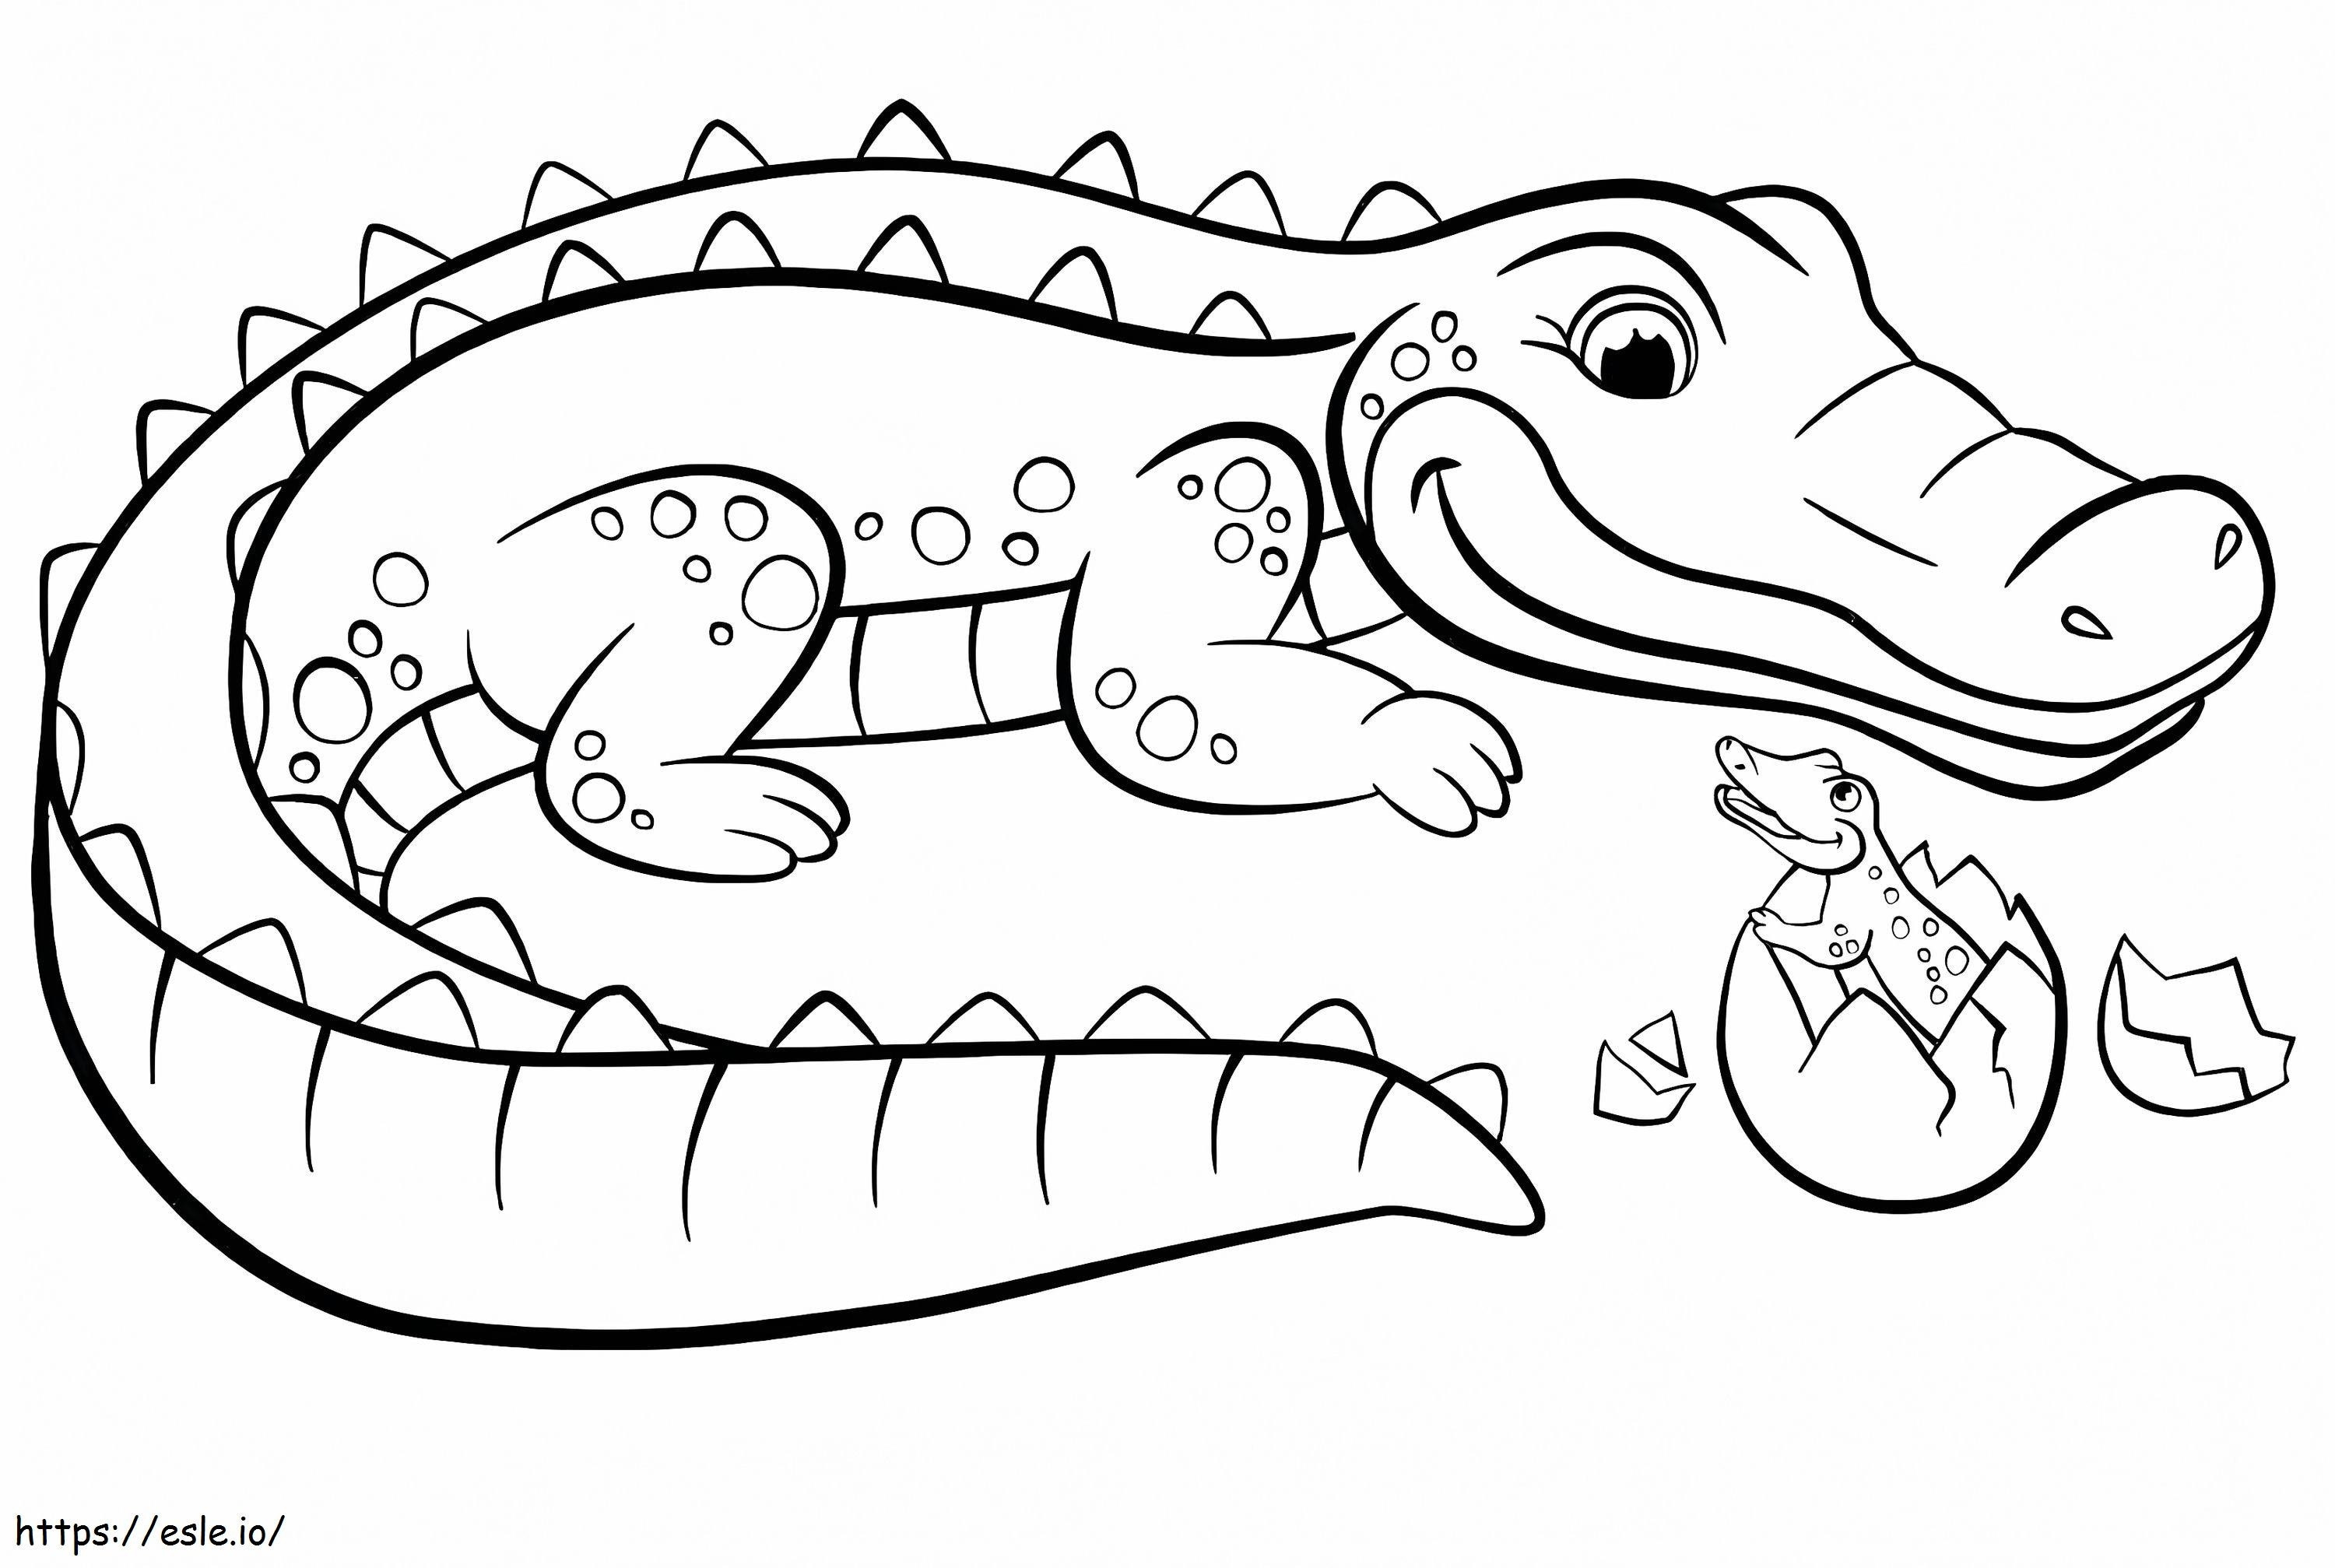  Krokotiilin värityssivu Suloinen sarjakuva Krokotiilin väritysarkki Krokotiilin värisivut Alligaattorin värisivu Itsekäs krokotiili värityskuva